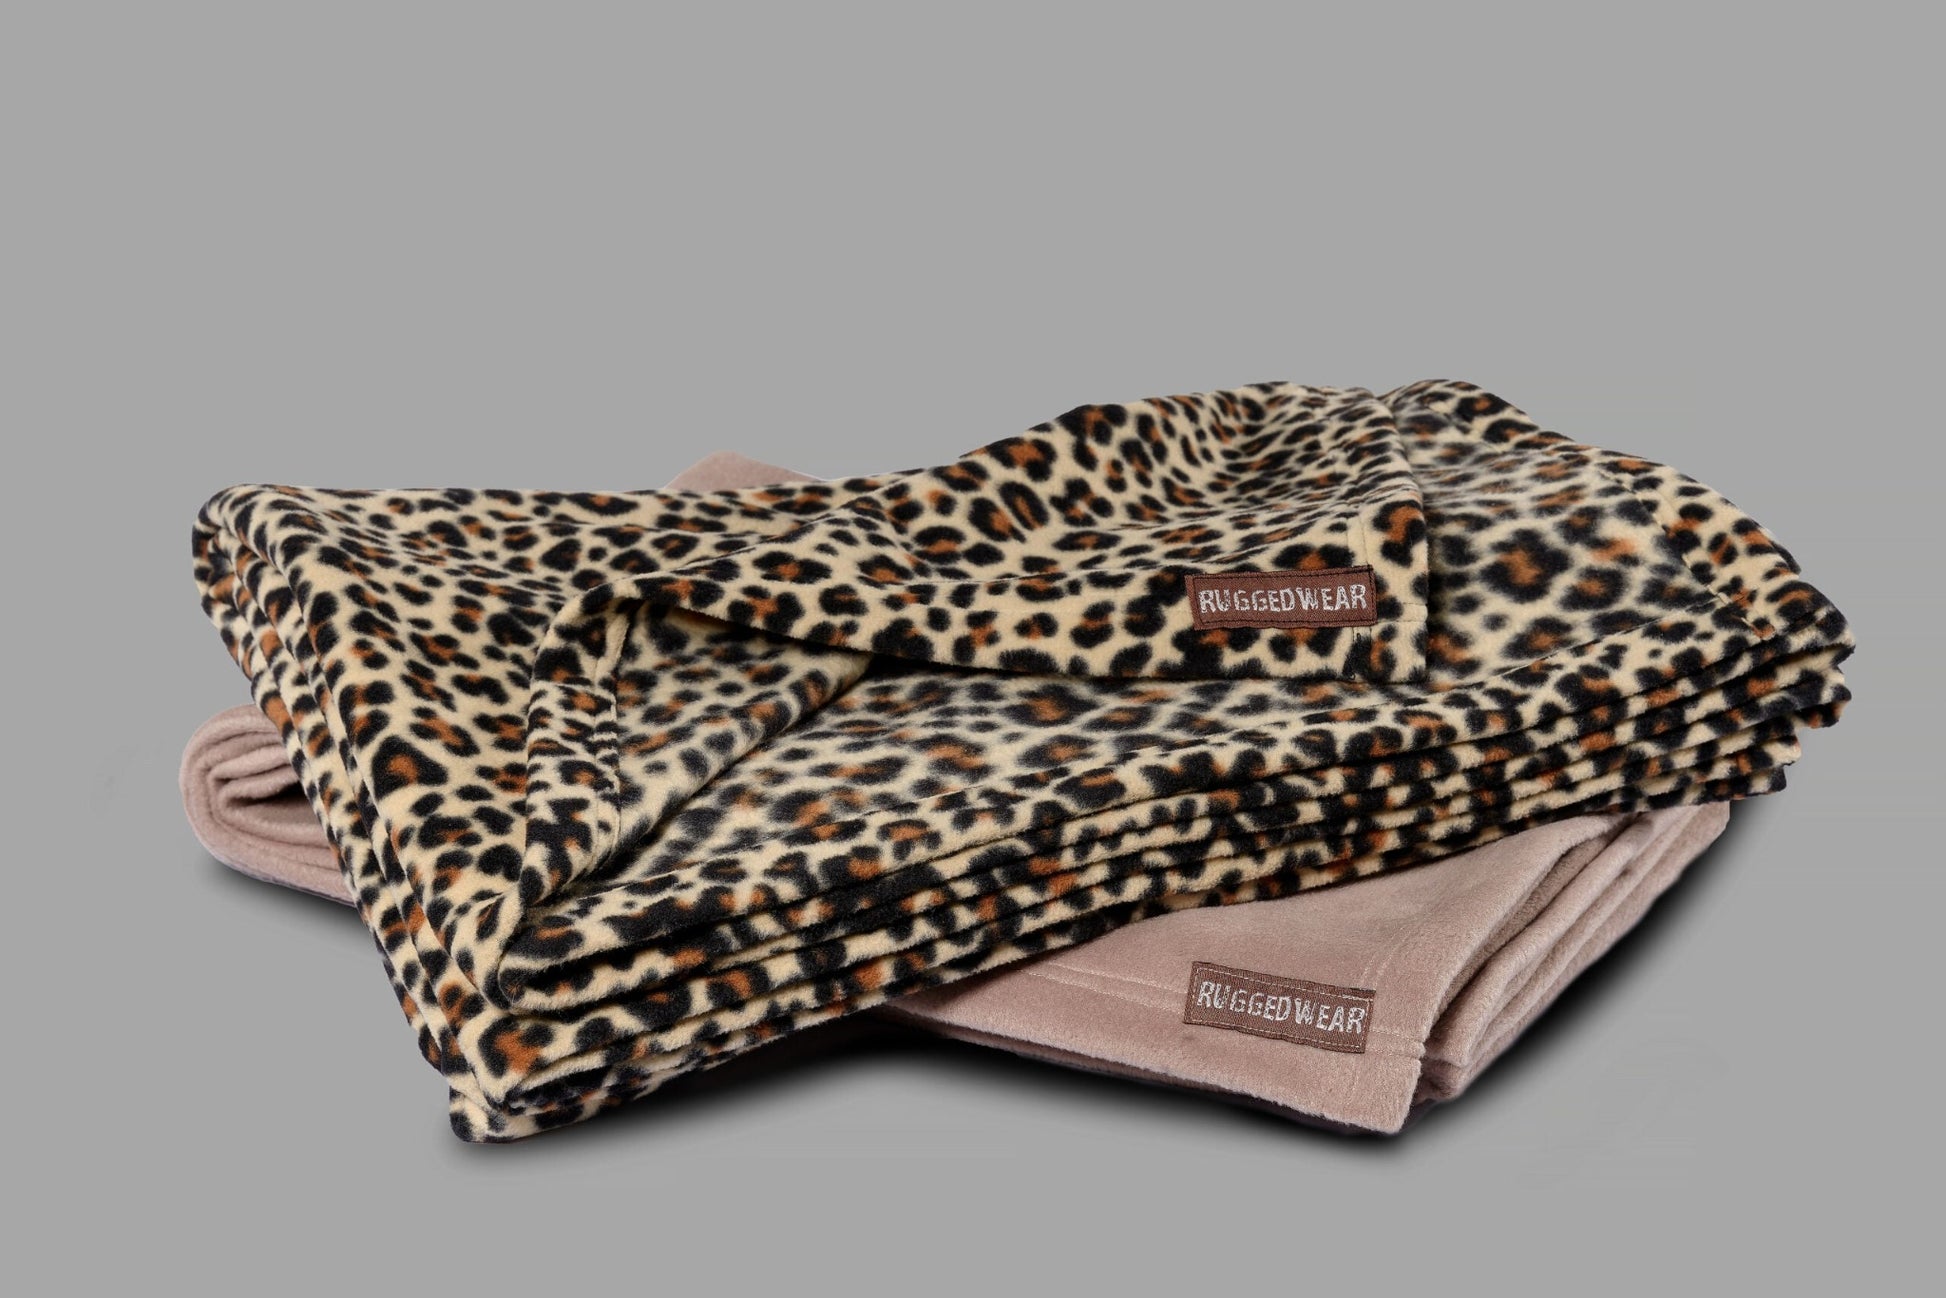 Ruggedwear Safari Fleece Blanket